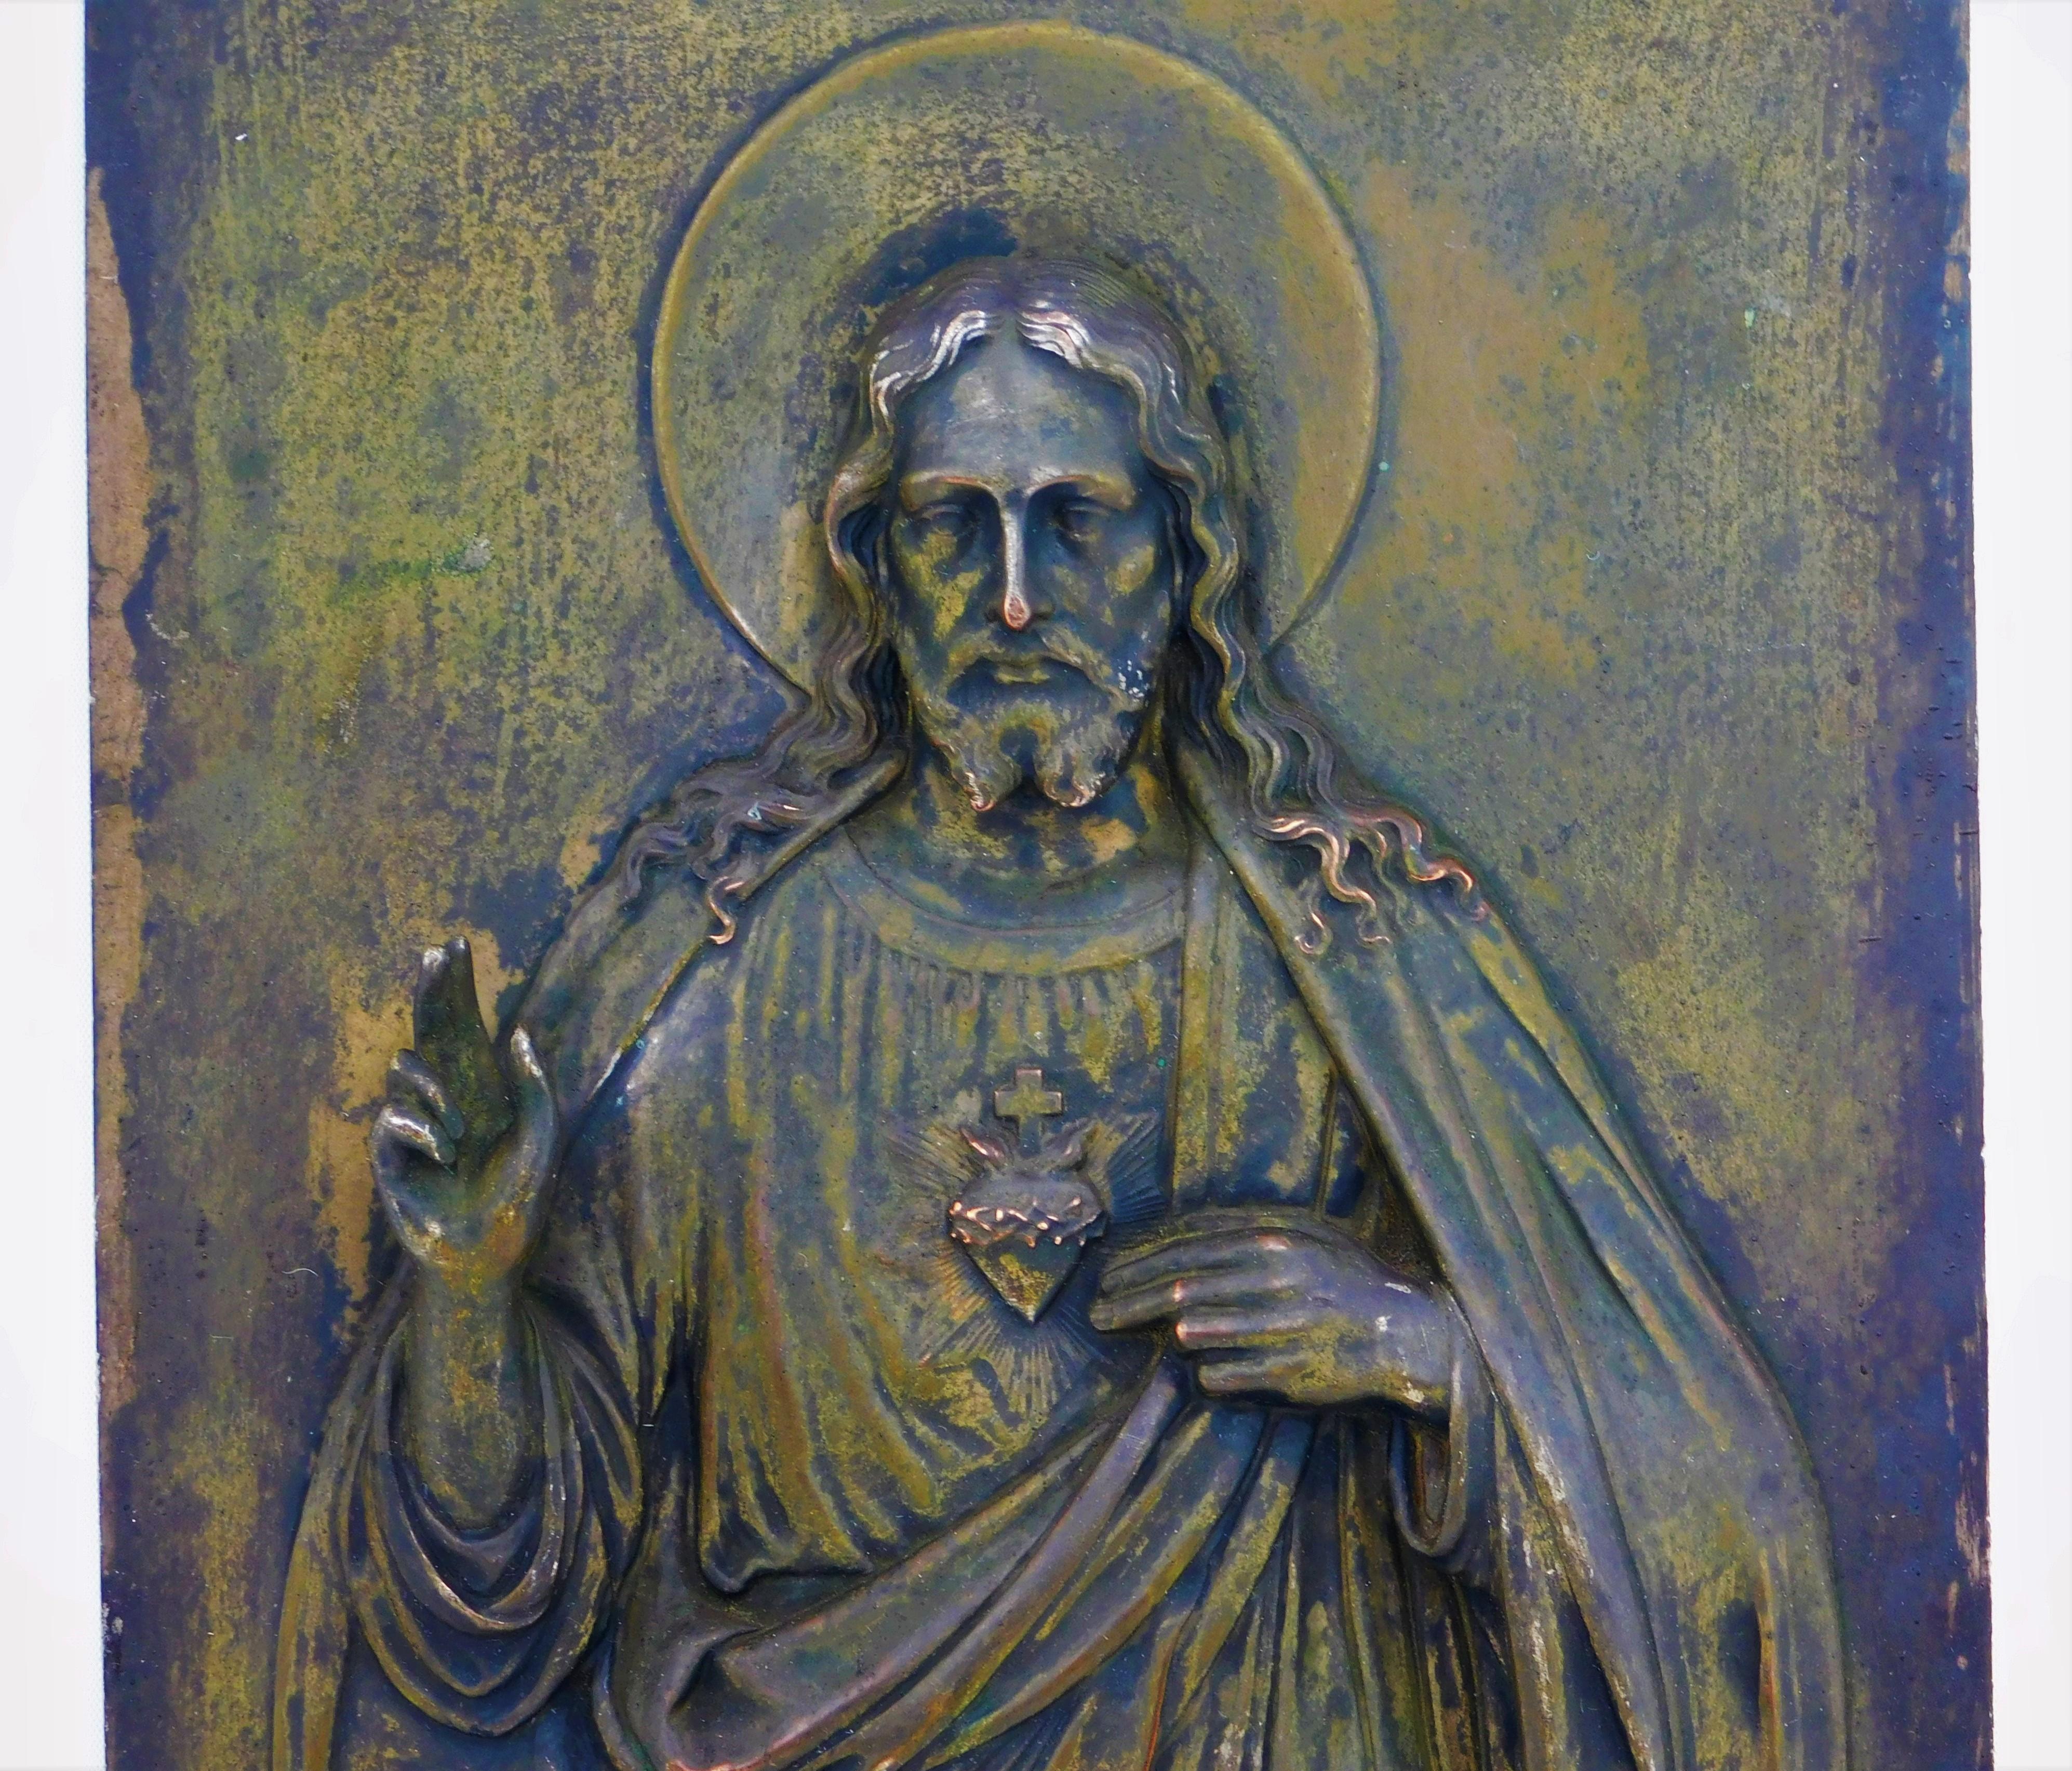 Plaque de bronze en relief de Jésus, datant des années 1890 et provenant d'Italie, mesurant 10